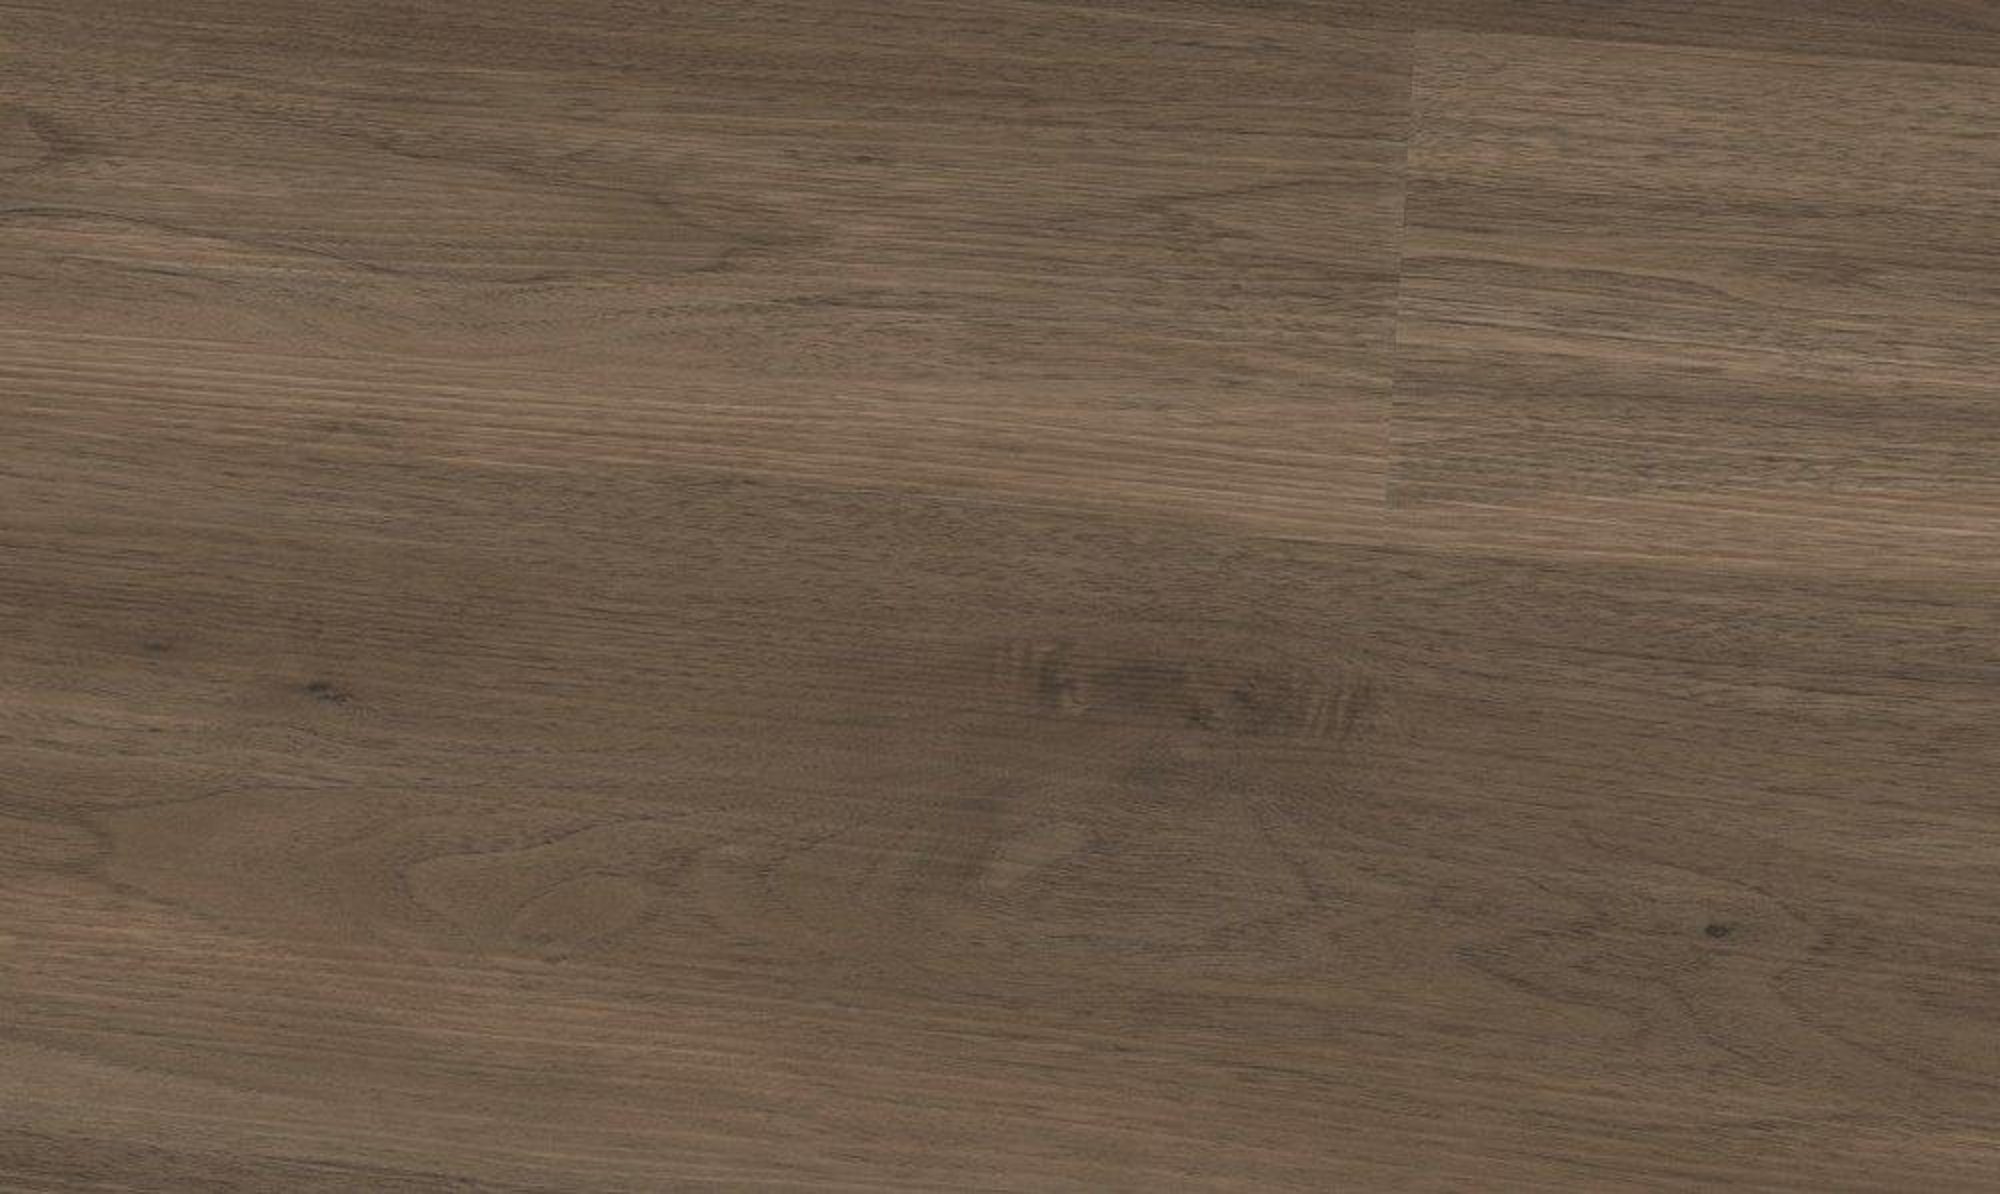 XXVinyl Trittschalldämmung, wunderschöne Holzdekore Vinylplanke Vinylboden mit Eiche Klick dunkelbraun Stück, m², 6,5 mm, 2,233 10